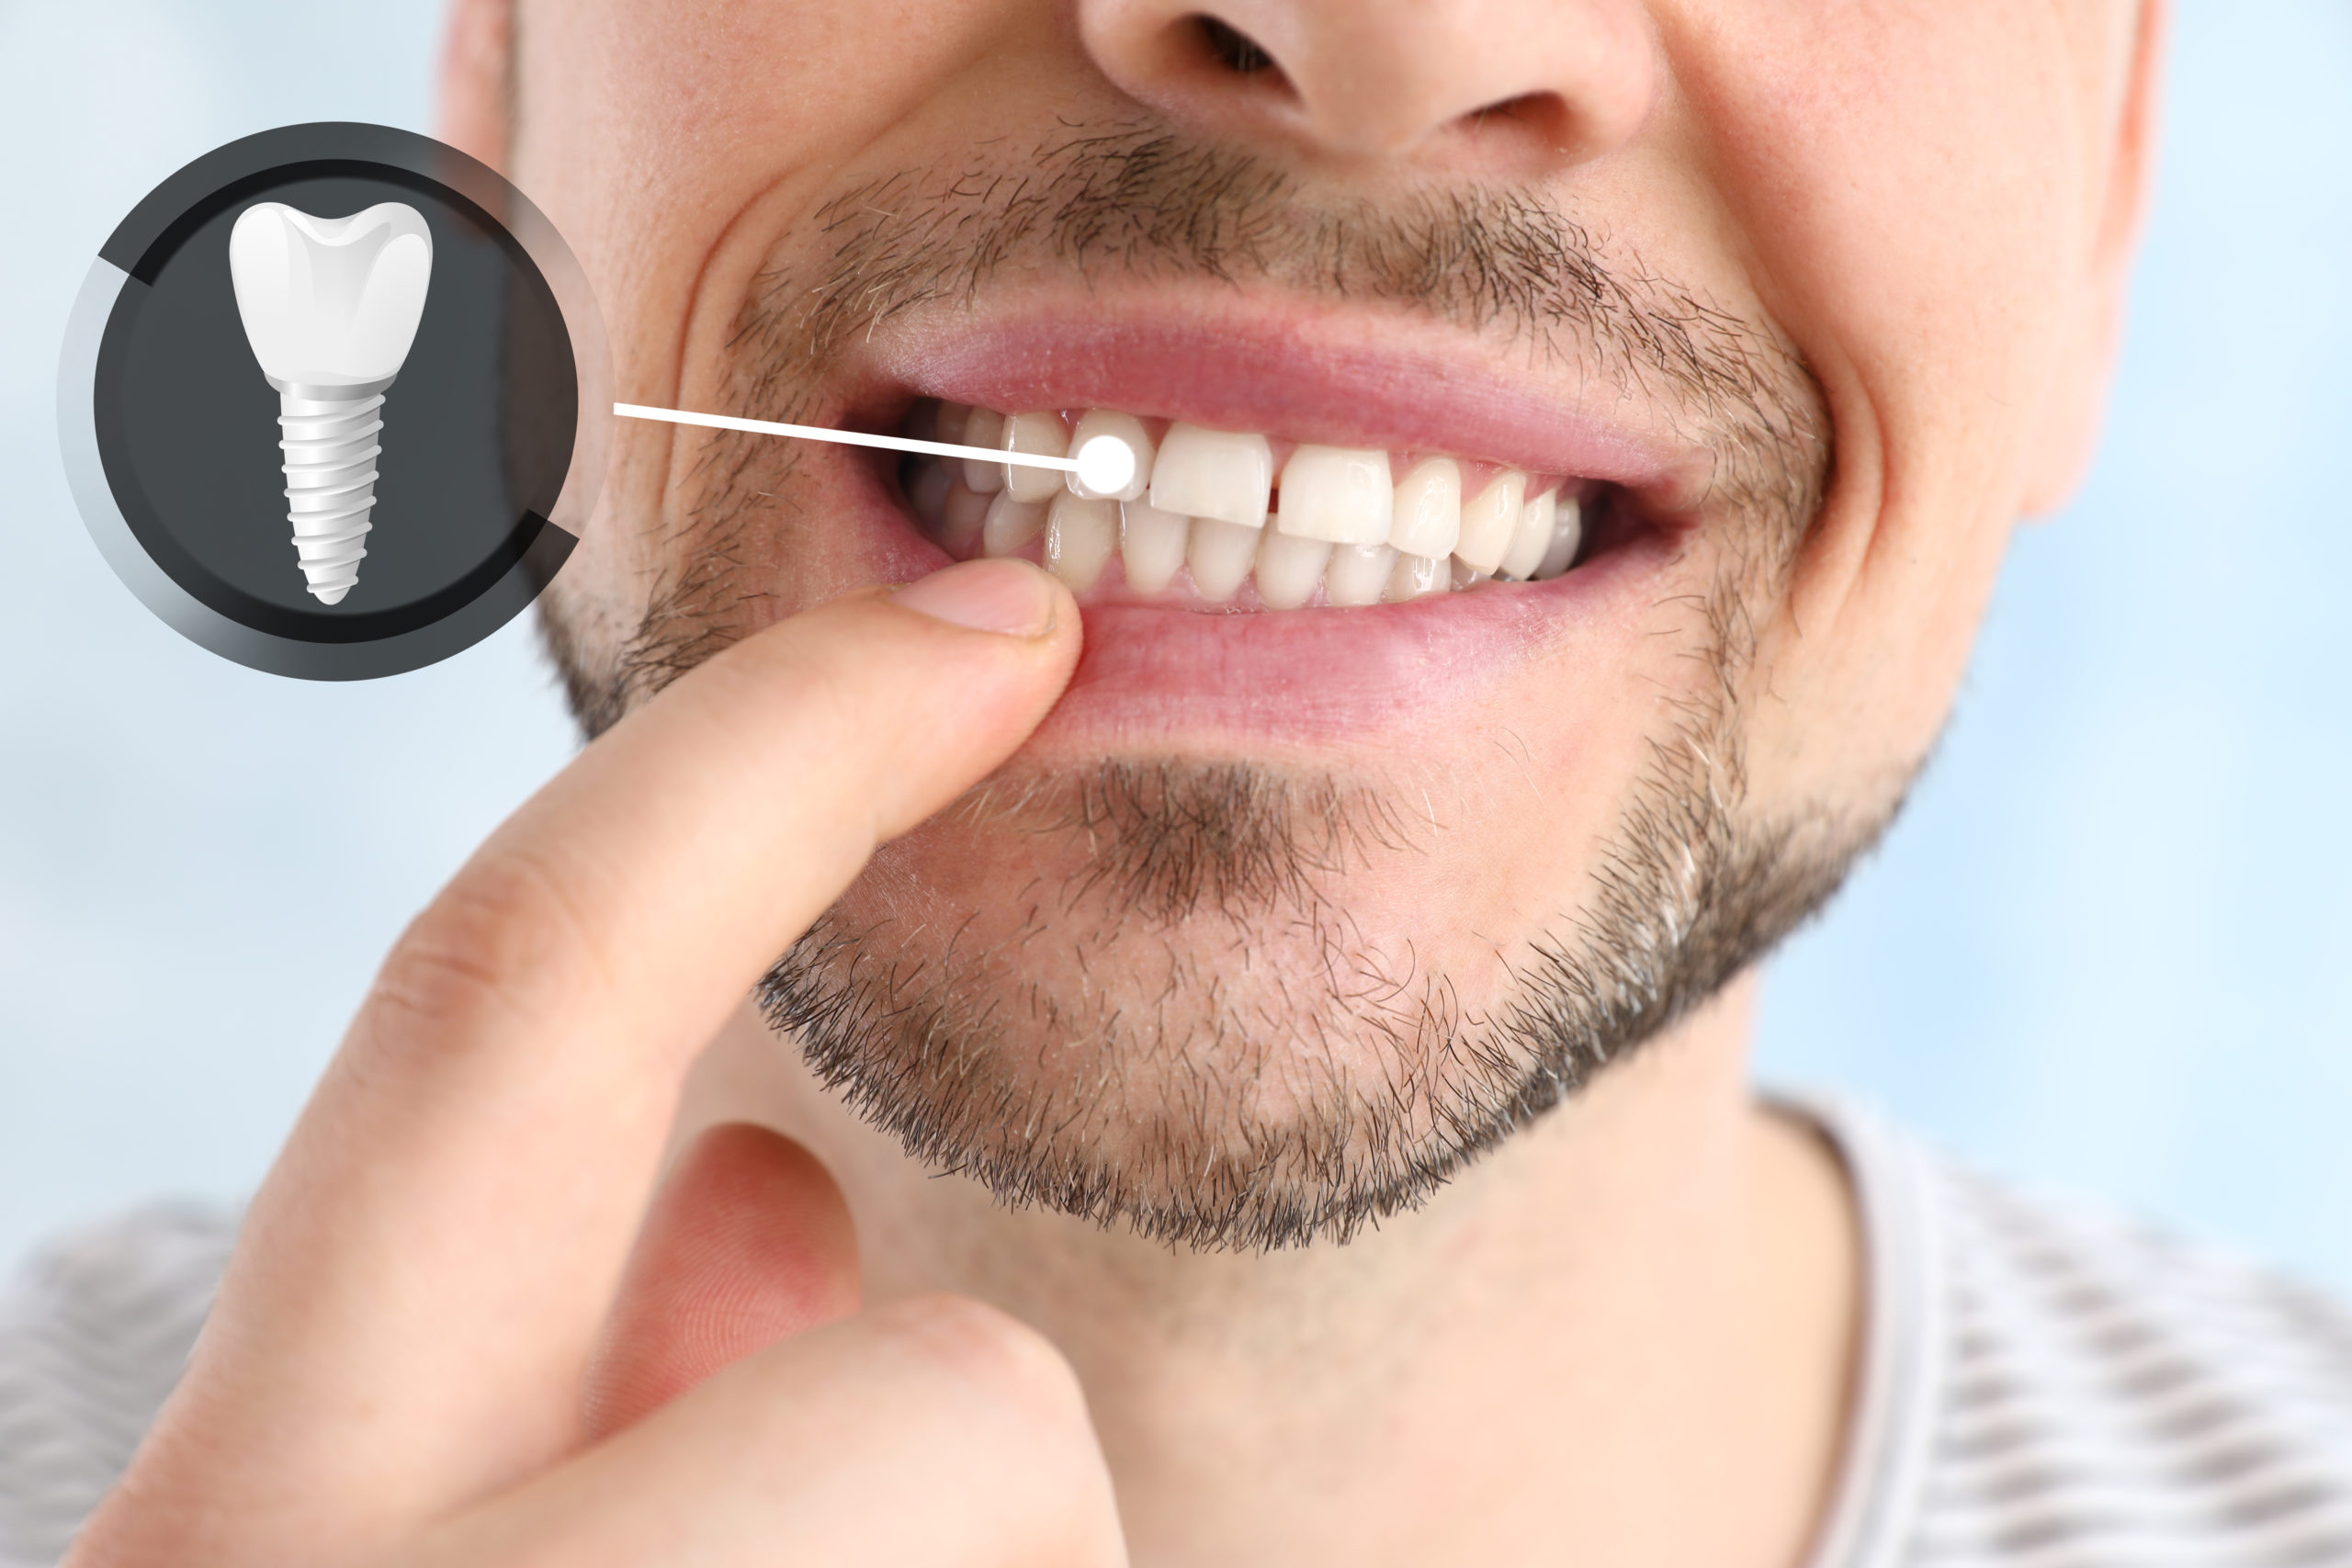 Implantologie - Die Unterstützung für happy smiles - Zahnimplantate sind vielseitig einsetzbar